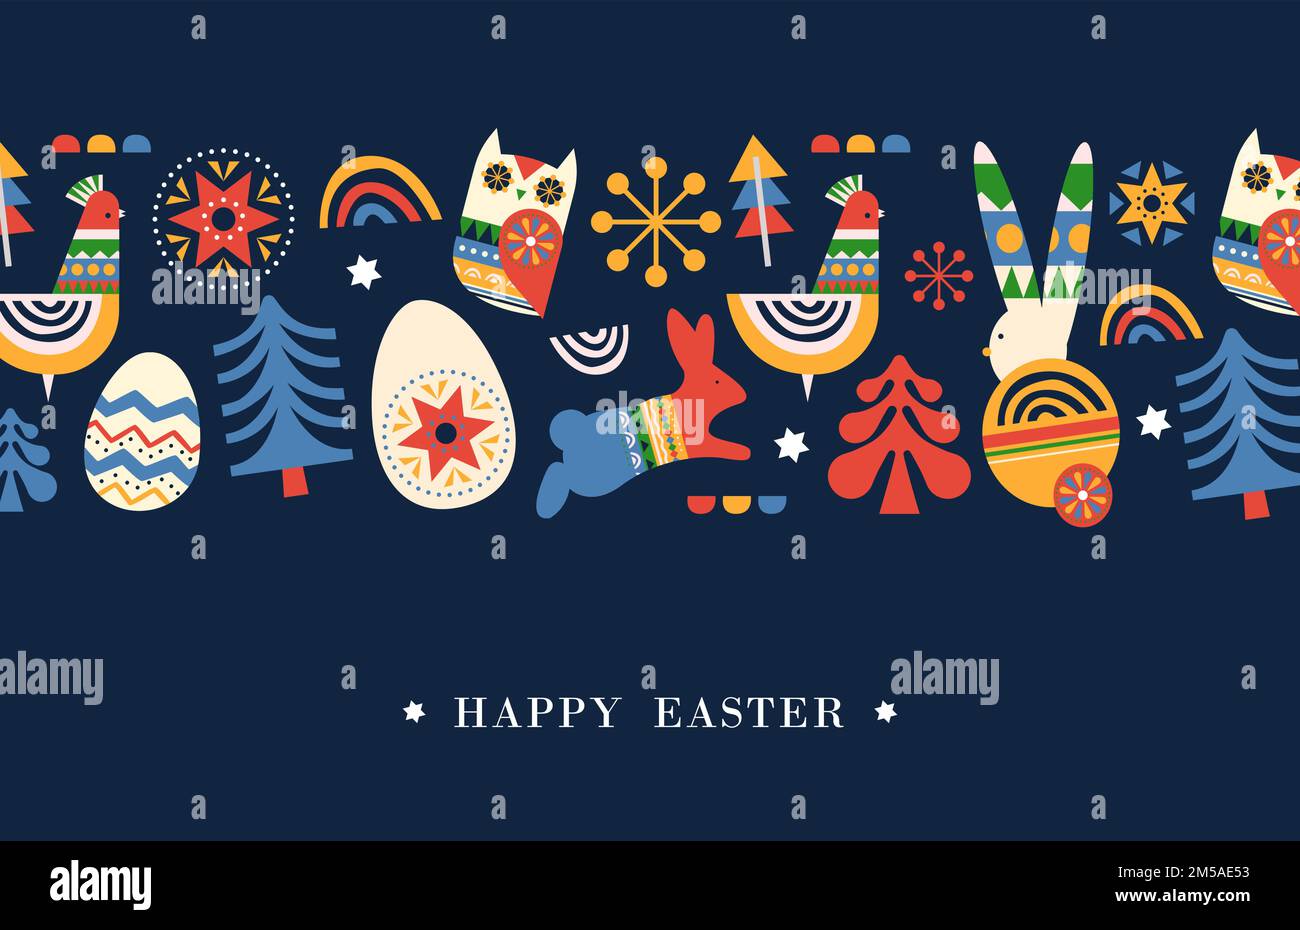 Carte de vœux de Pâques joyeuse illustration de l'art populaire coloré lapin animal et la décoration des oeufs de la saison des fêtes. Célébration religieuse traditionnelle Illustration de Vecteur